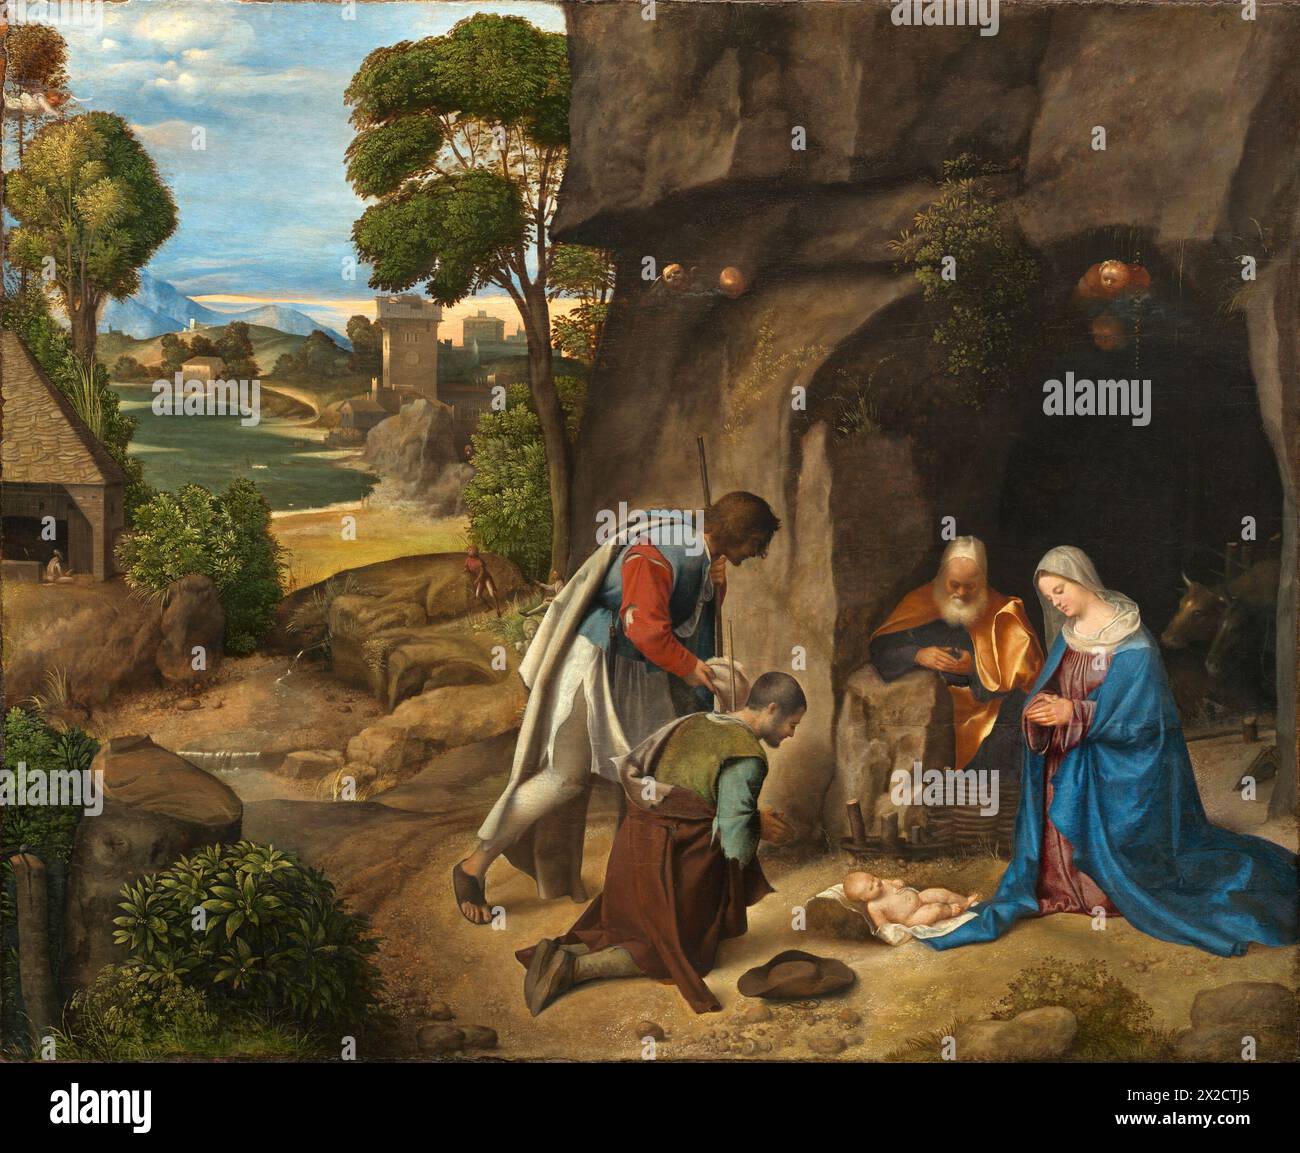 Gemälde der Anbetung der Hirten vom italienischen Maler Giorgione Oil auf Leinwand Kunstwerk Meisterwerk Stockfoto